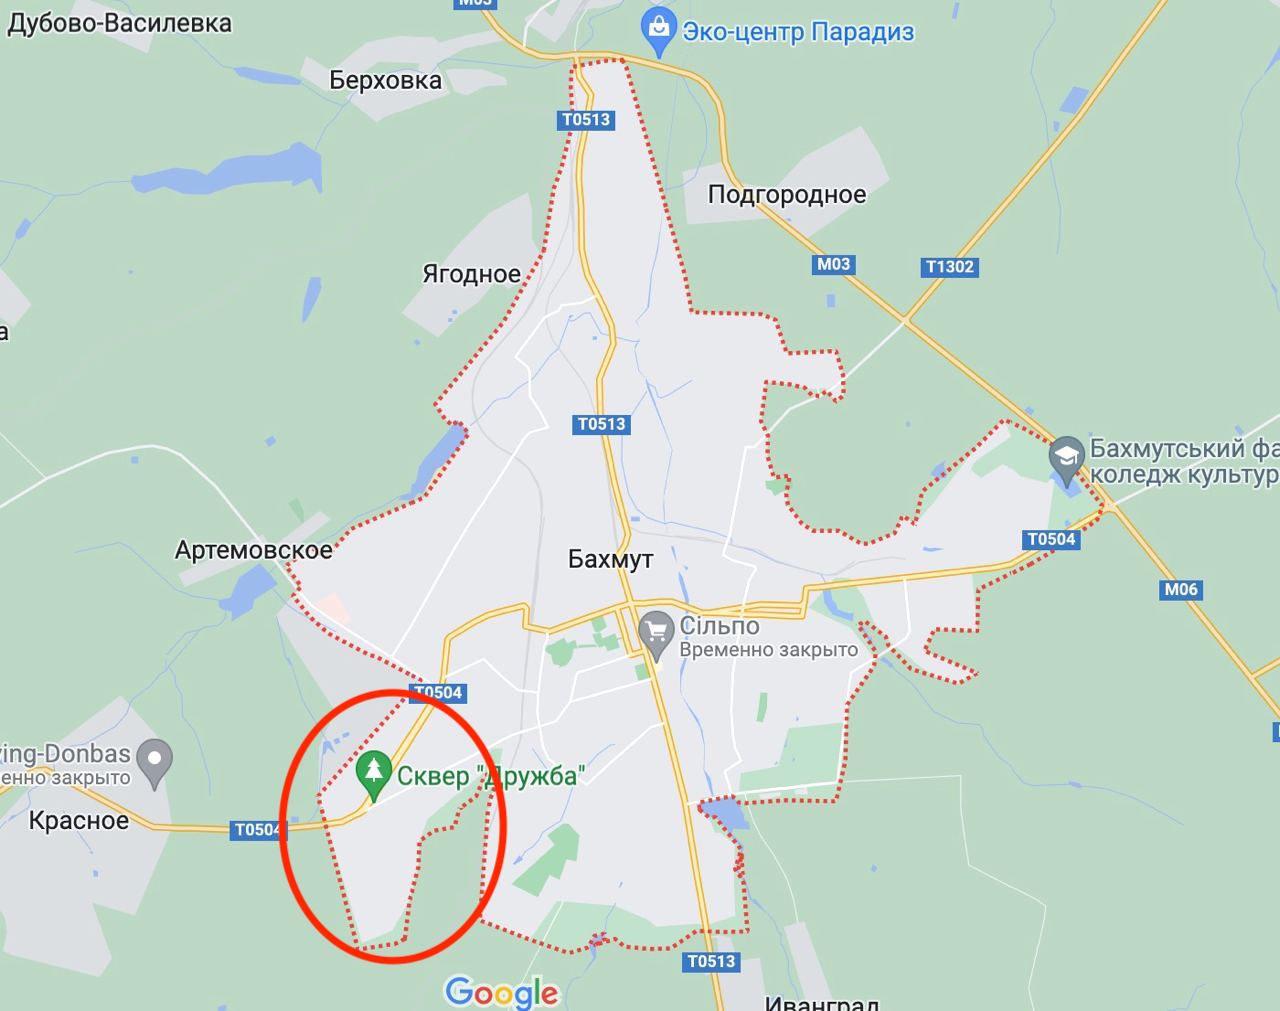 Червоним обведено район Бахмута "Літак", який, за словами Ганни Маляр, поки що контролюється ЗСУ. Карта. Google Maps